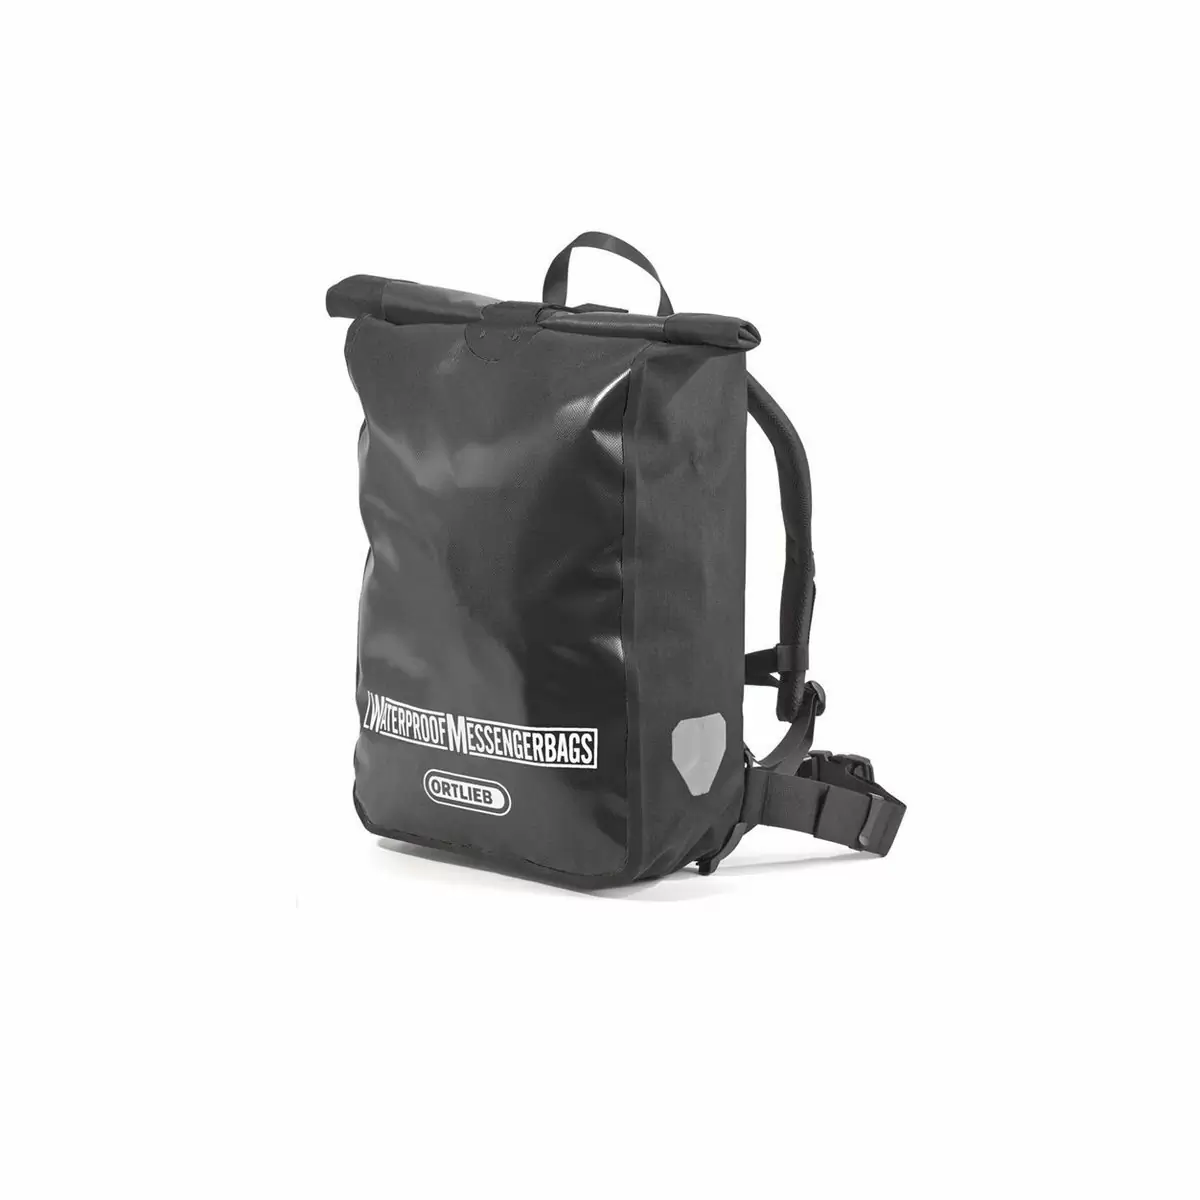 Backpack Messenger Bag F2305 black - image